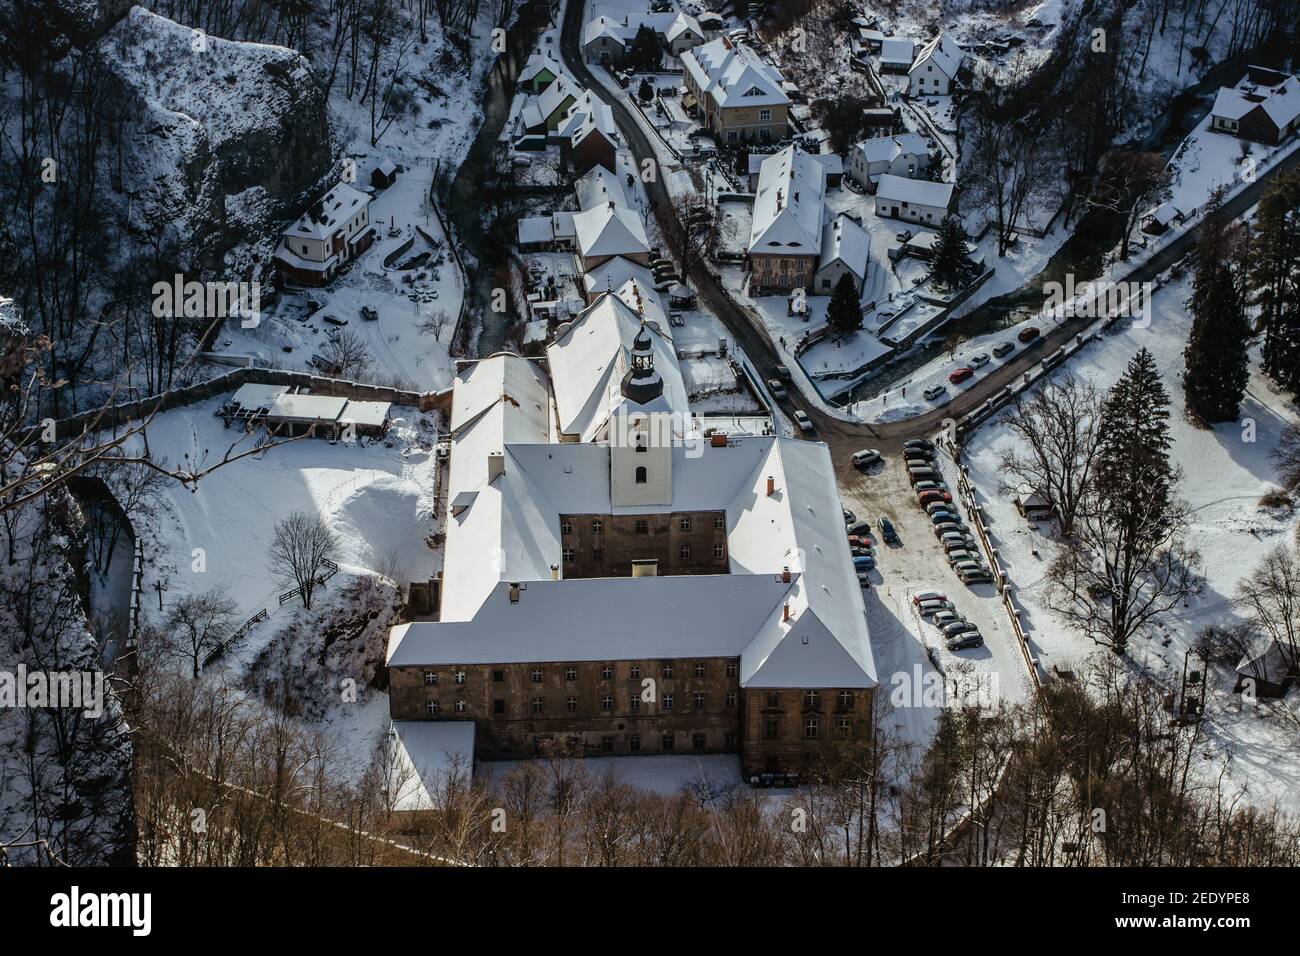 Vista aérea de invierno de Svaty Jan pod Skalou, pequeño pueblo pintoresco en Bohemia Central, República Checa. Monasterio escondido bajo acantilados y rocas Foto de stock